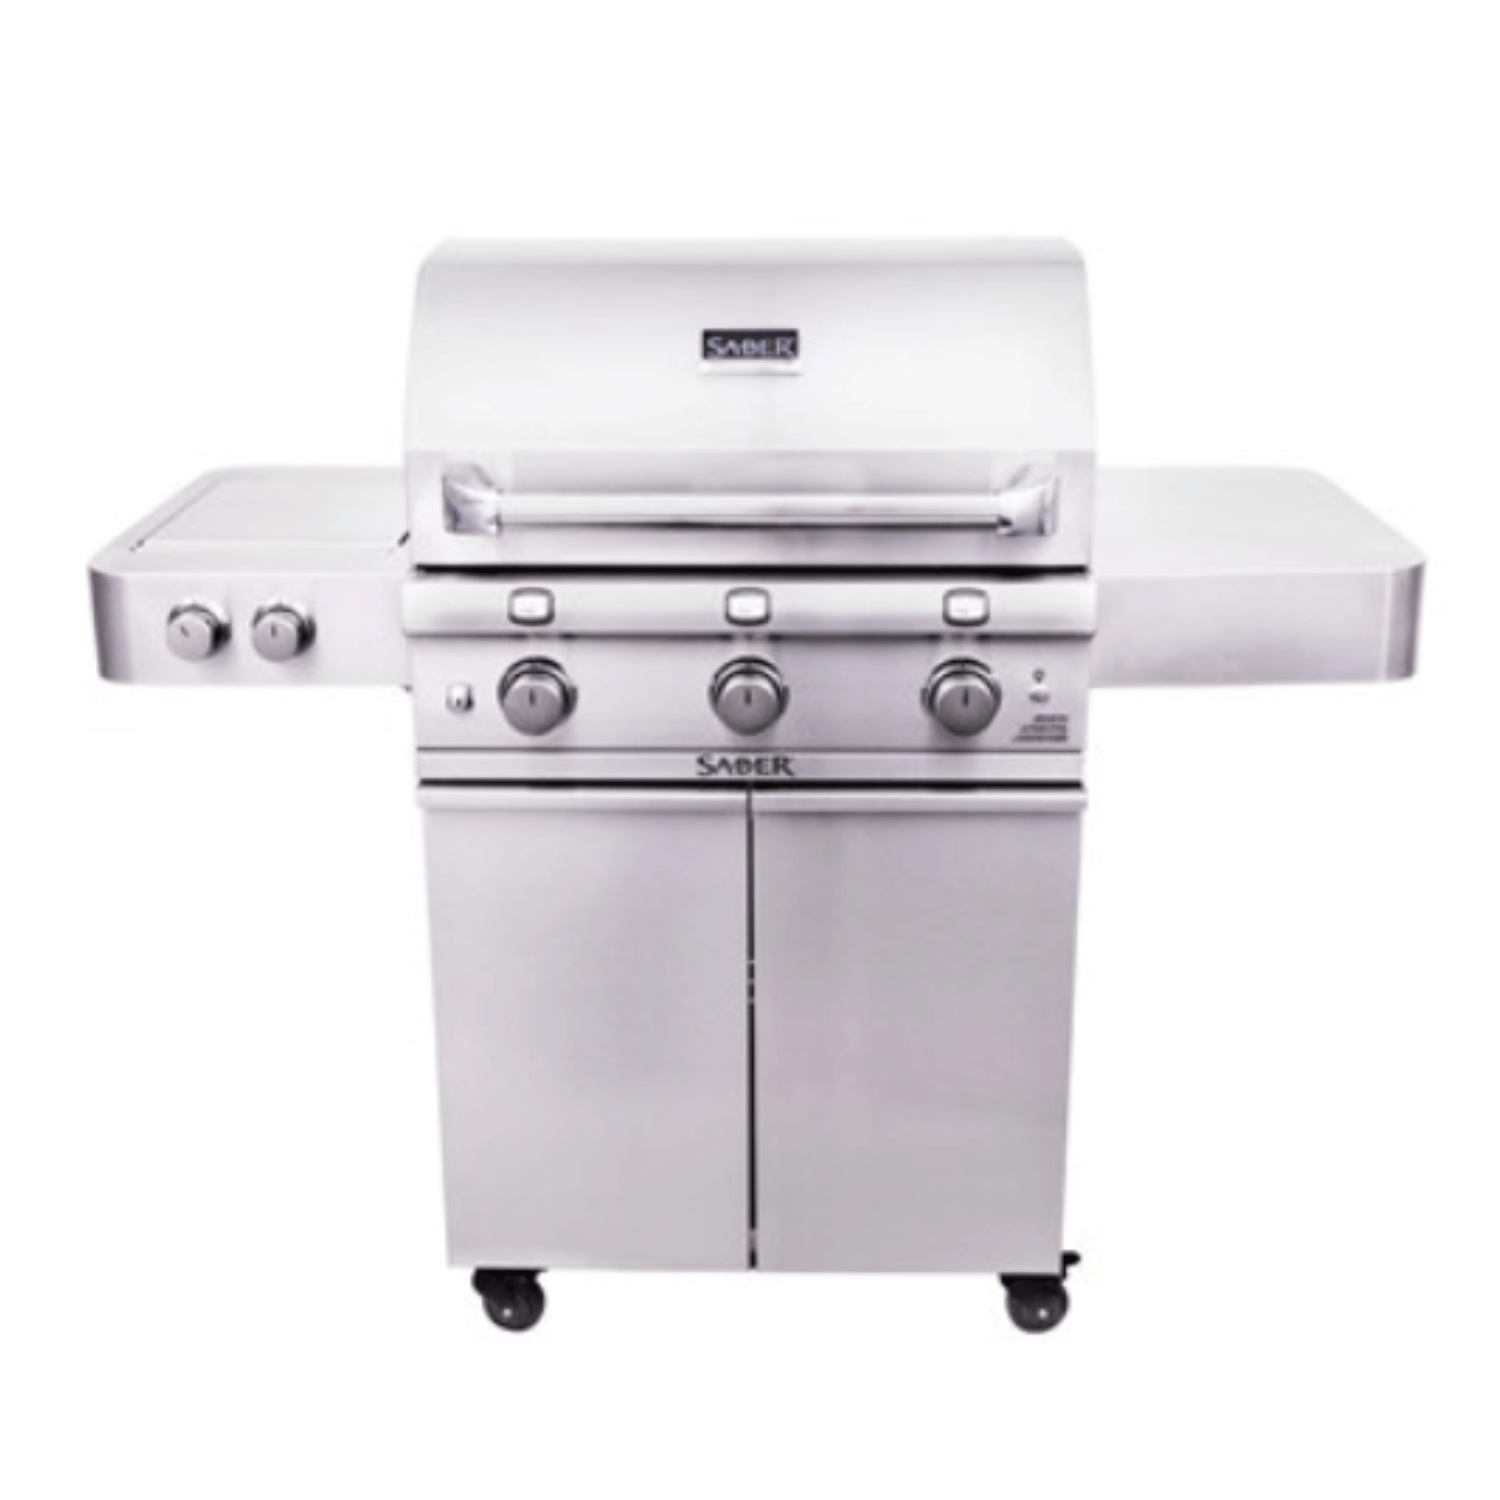 Barbecue Premium 550 – Saber